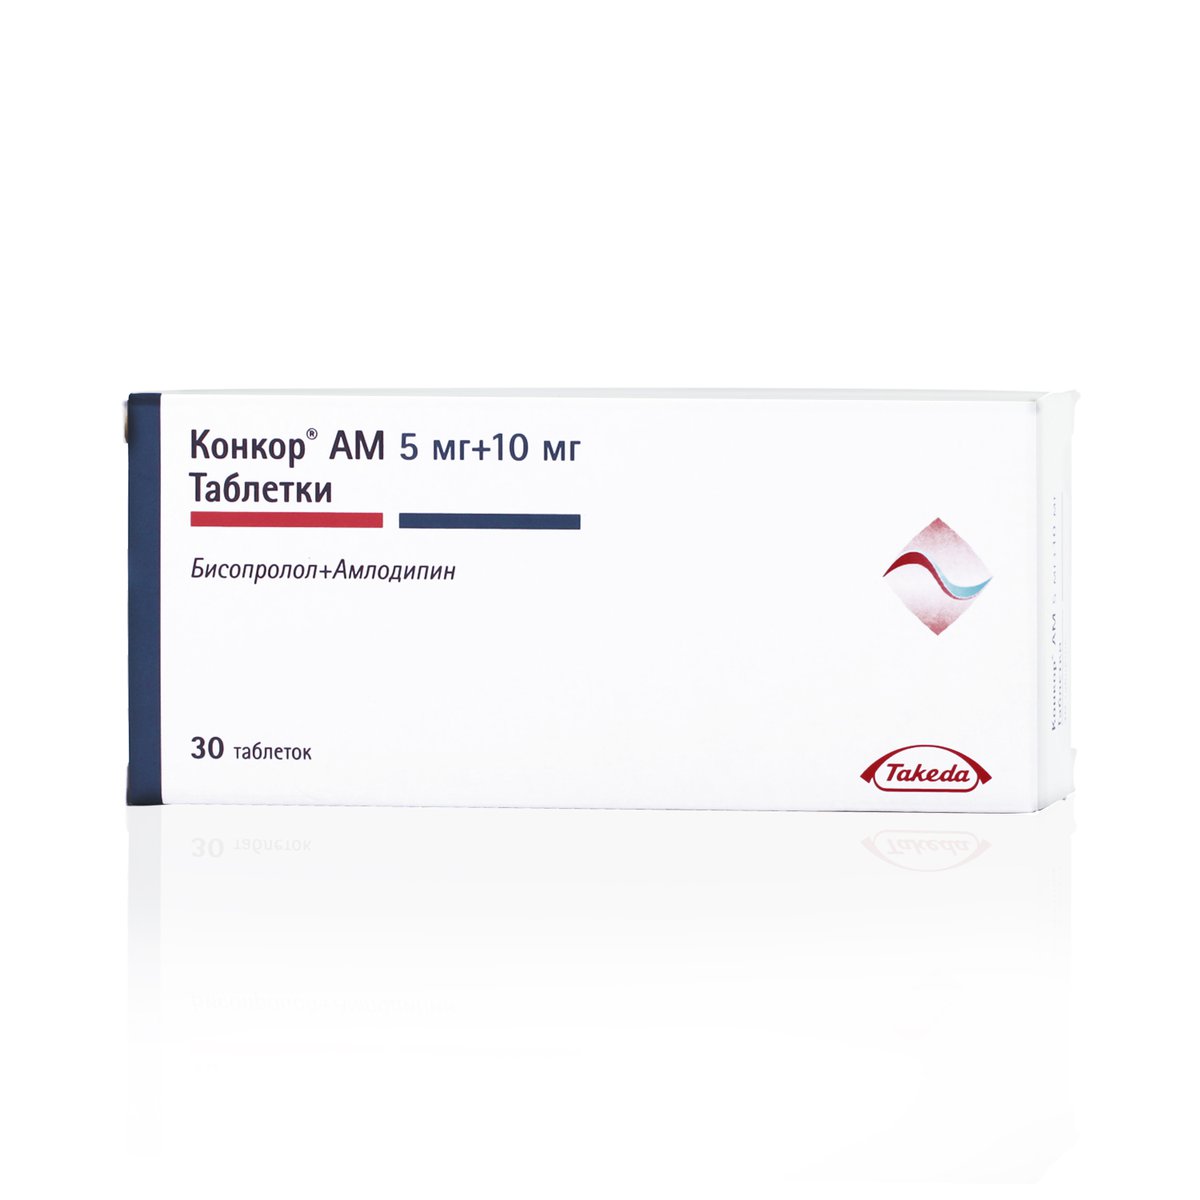 Конкор АМ (таблетки, 30 шт, 5 + 10 мг + мг) - цена,  онлайн в .